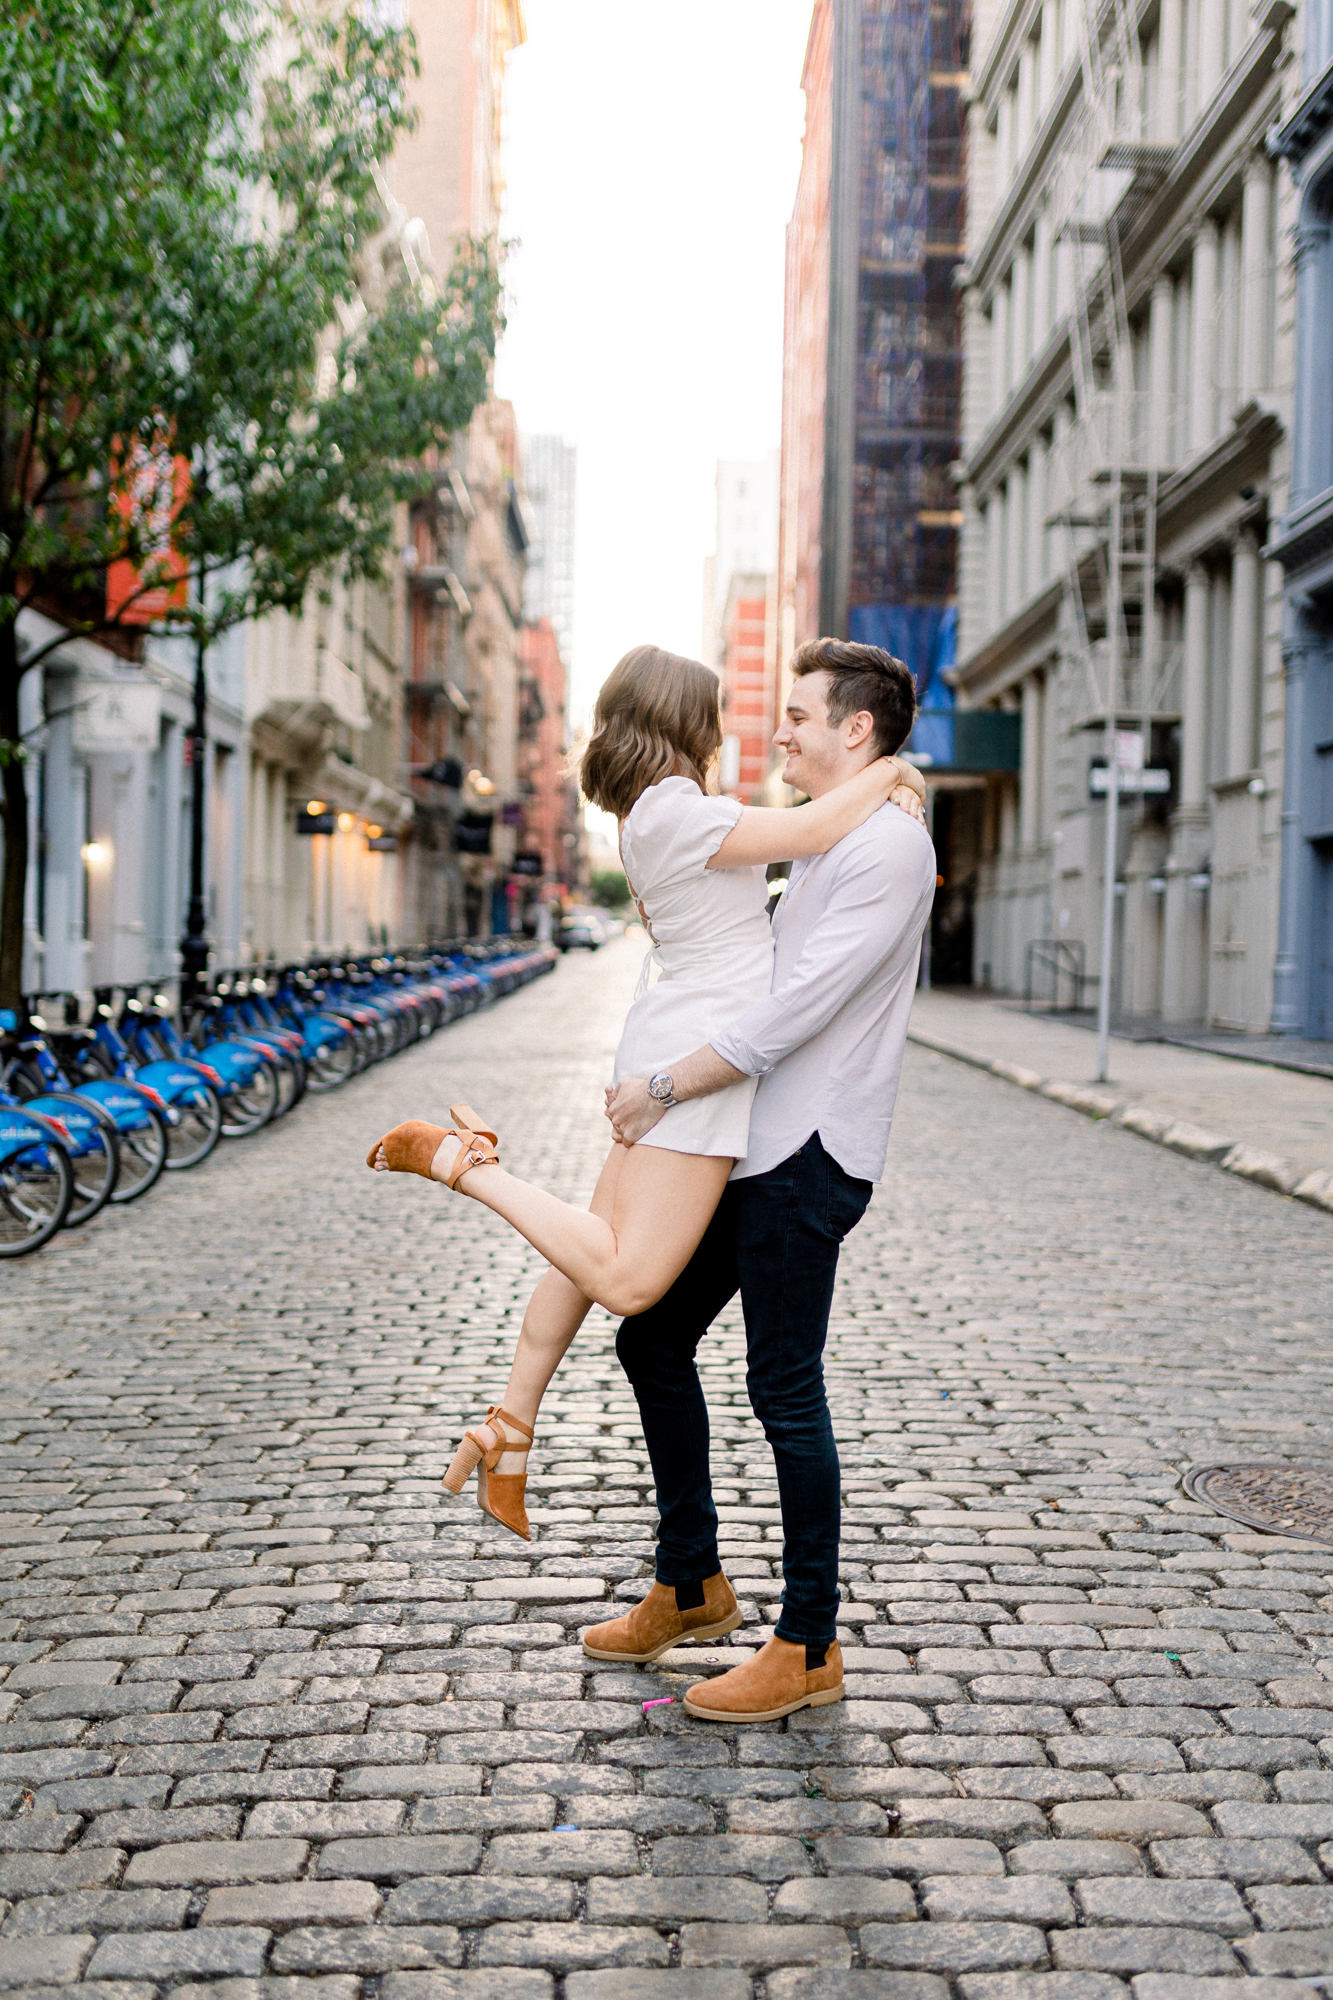 Romantic Engagement Photos in Scenic Soho New York